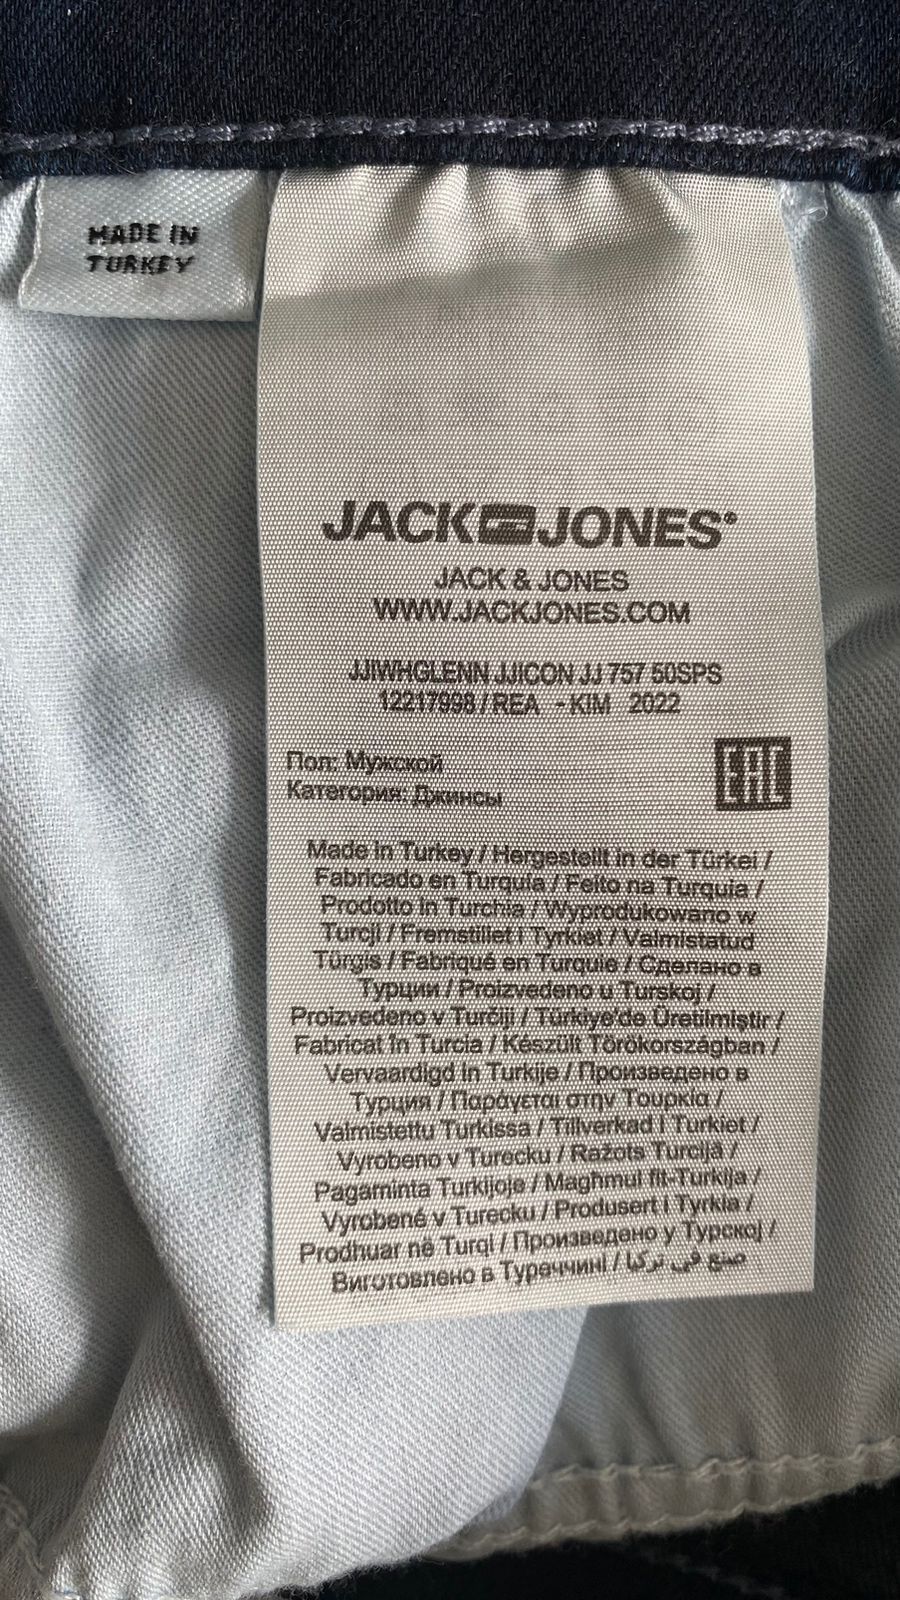 SpodnieJack Jones